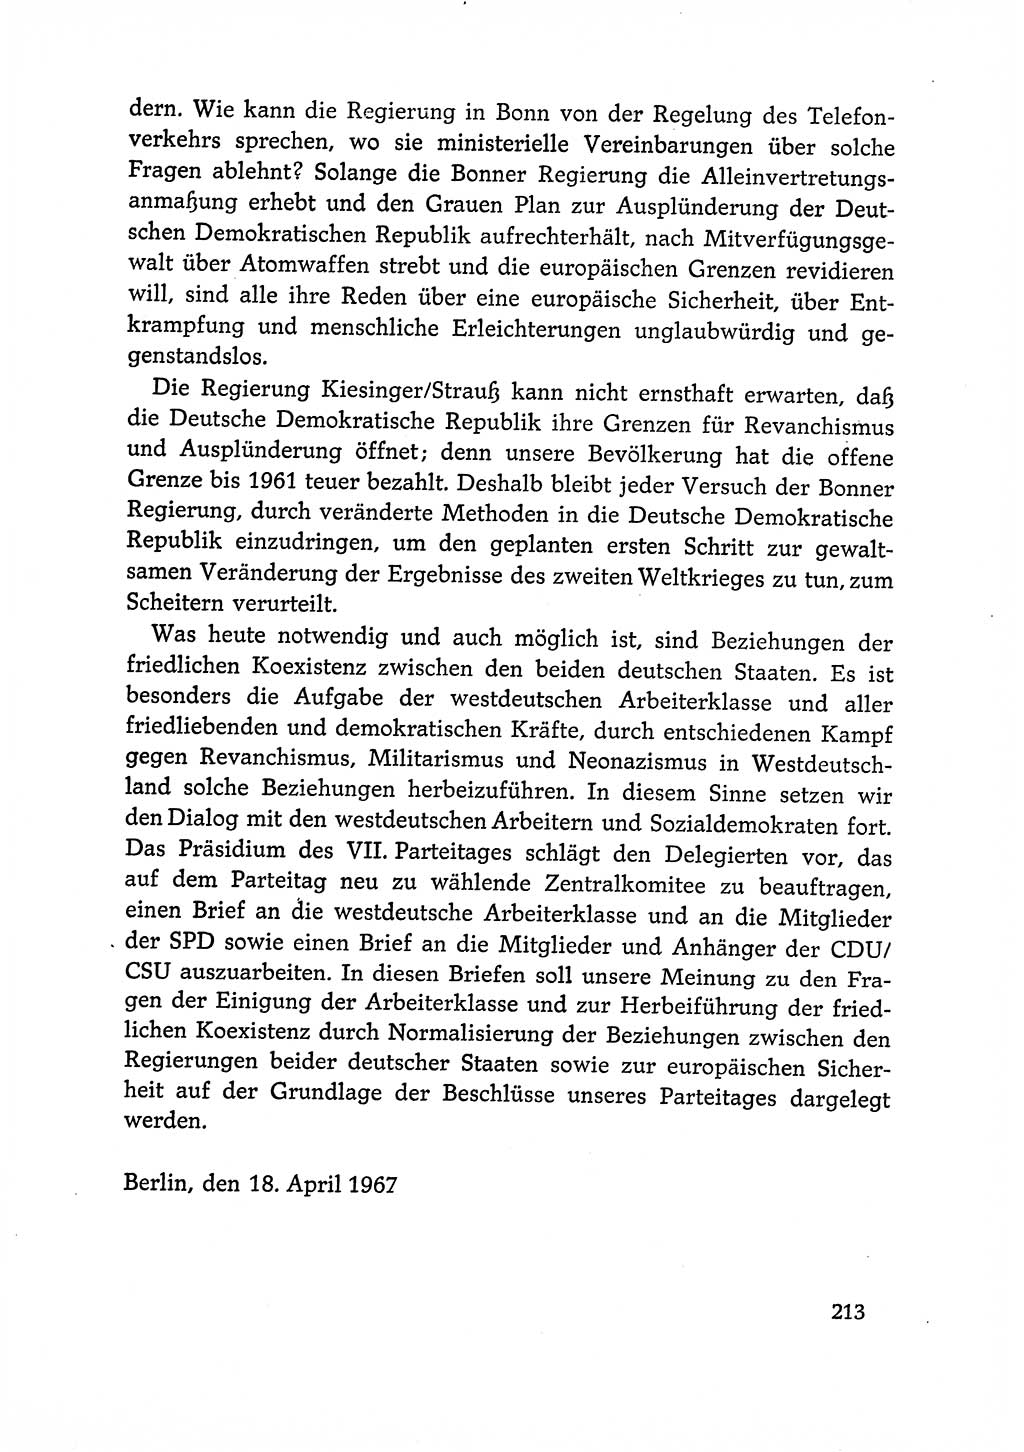 Dokumente der Sozialistischen Einheitspartei Deutschlands (SED) [Deutsche Demokratische Republik (DDR)] 1966-1967, Seite 213 (Dok. SED DDR 1966-1967, S. 213)